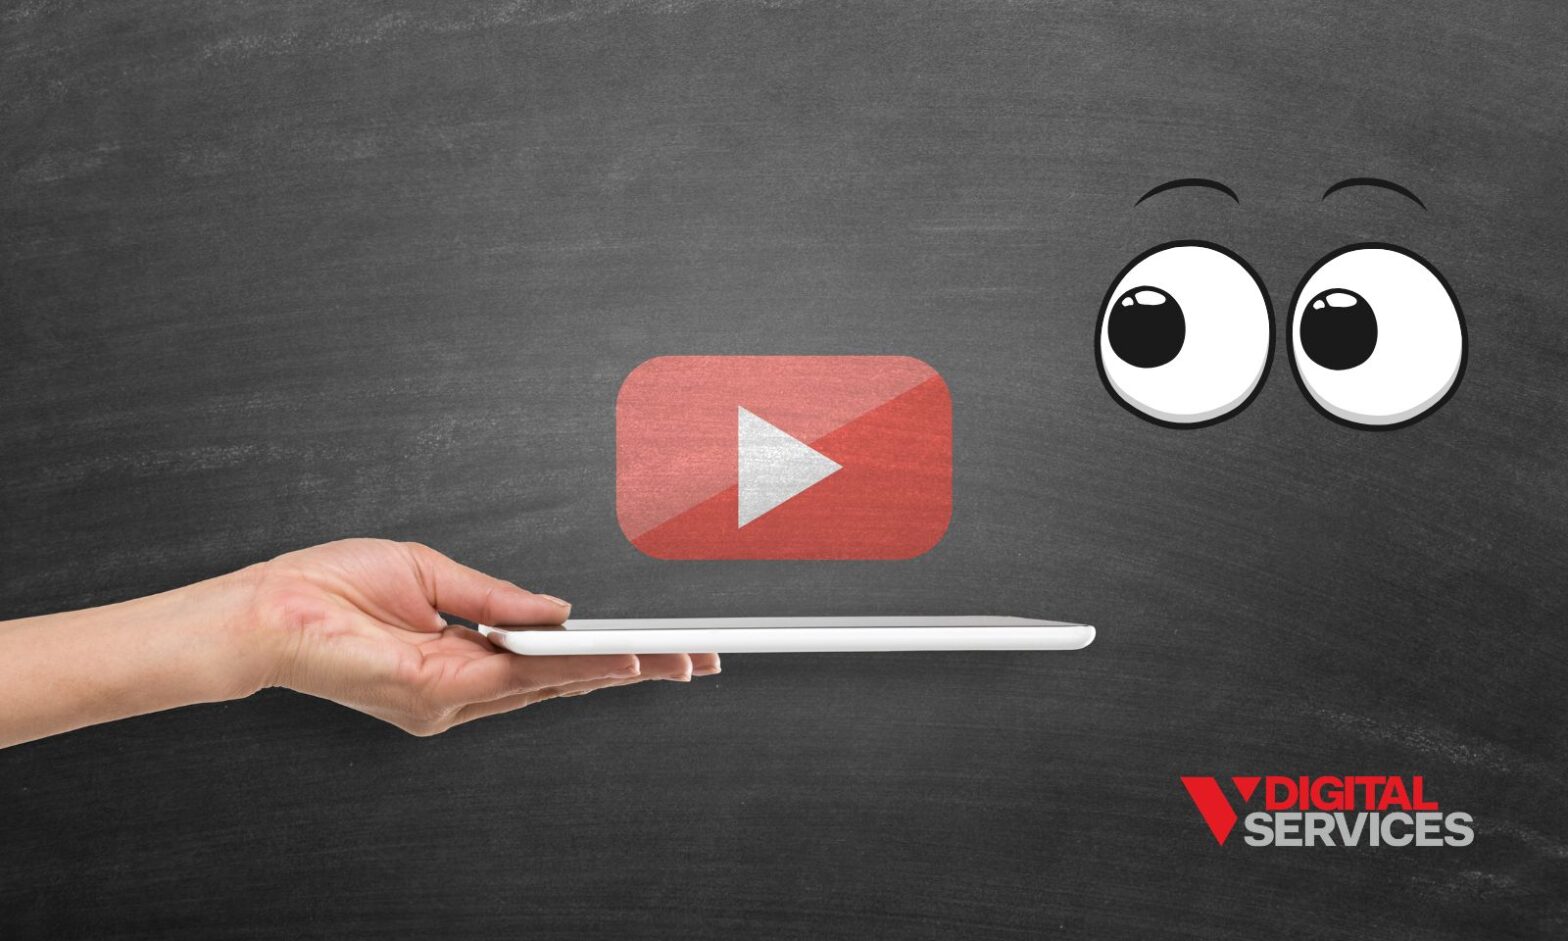 YouTube TrueView ads V Digital Services